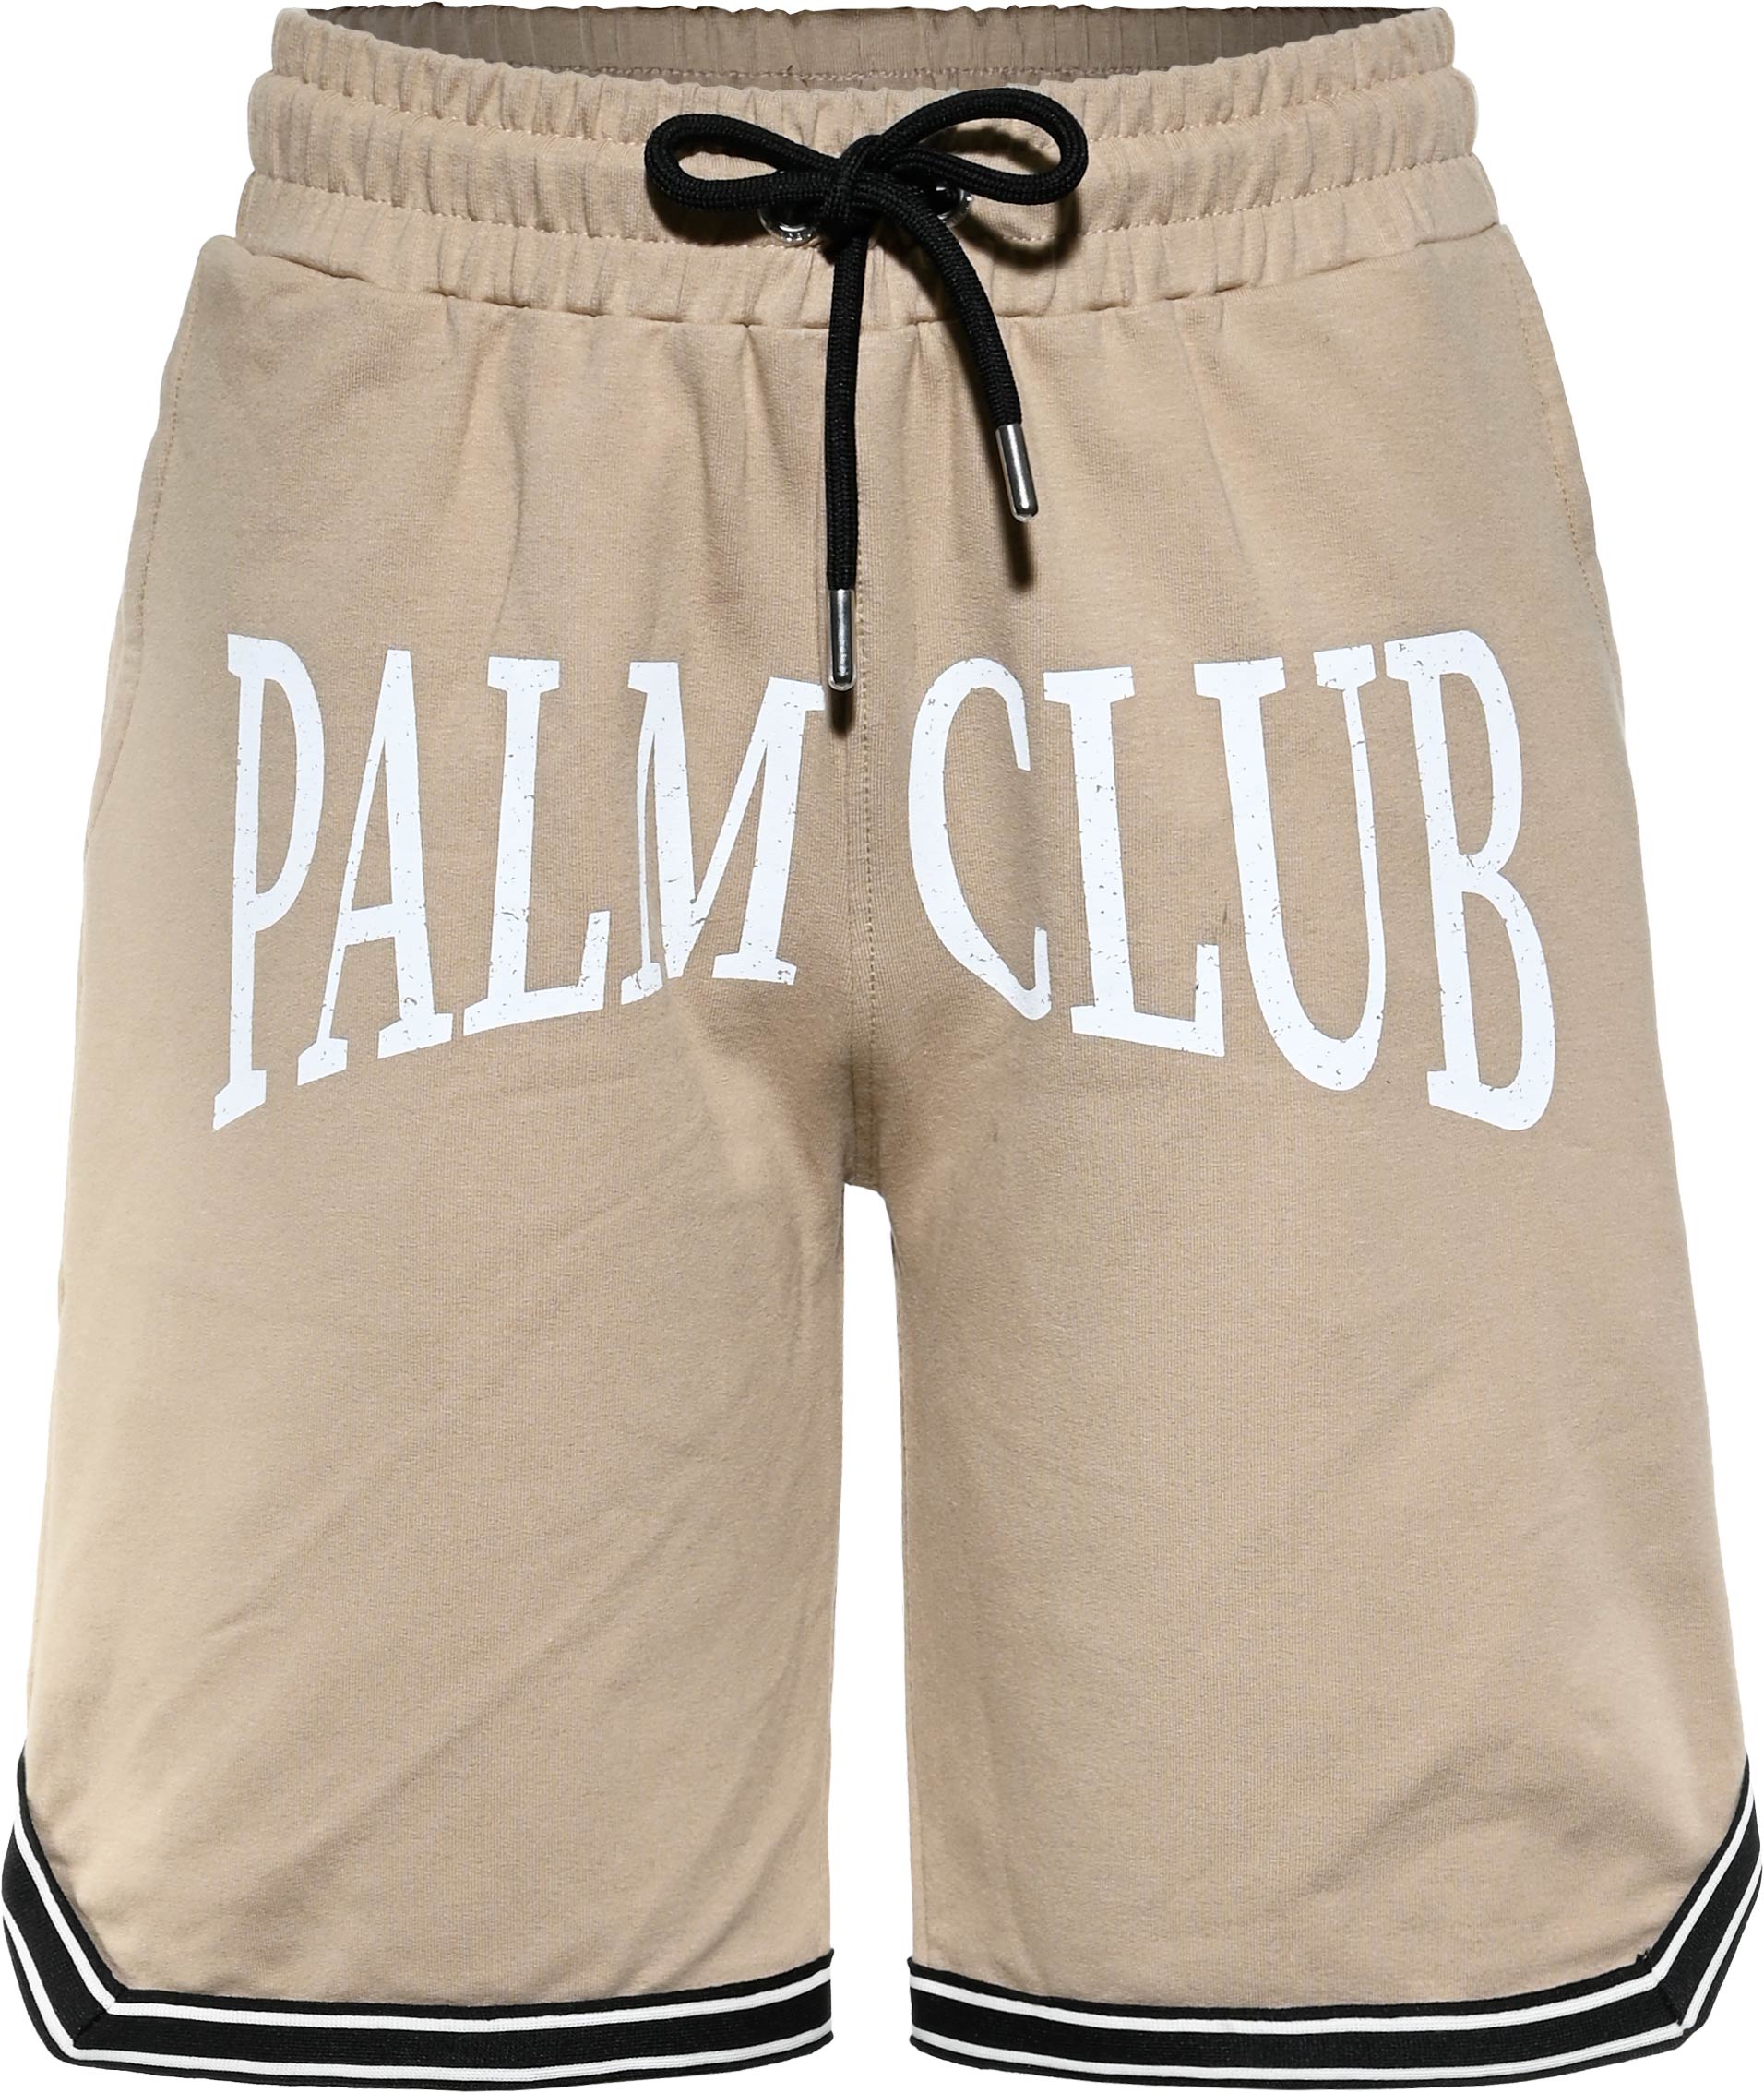 6360-Boys Sweat Short -Palm Club